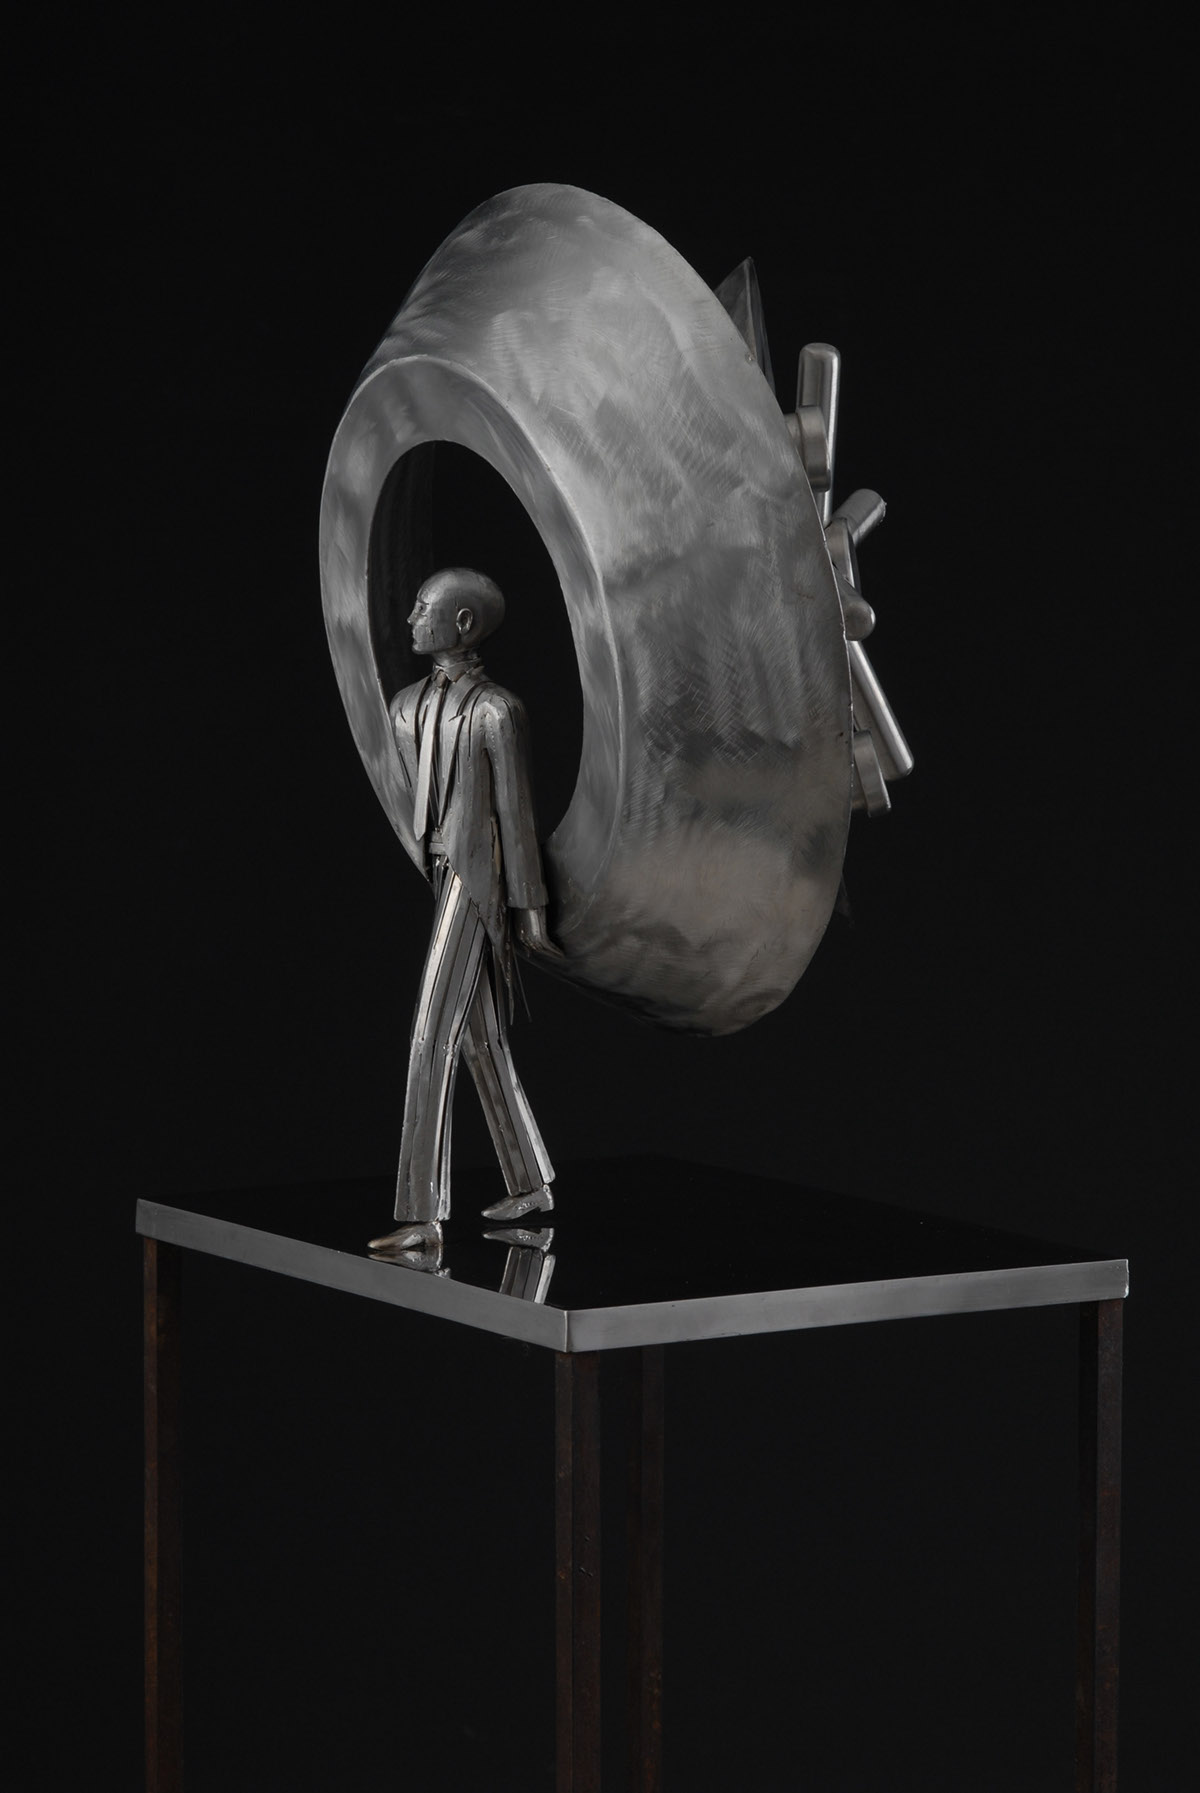 Stainless steel acciaio Inox sculpture metal art design thief dreams italian designer